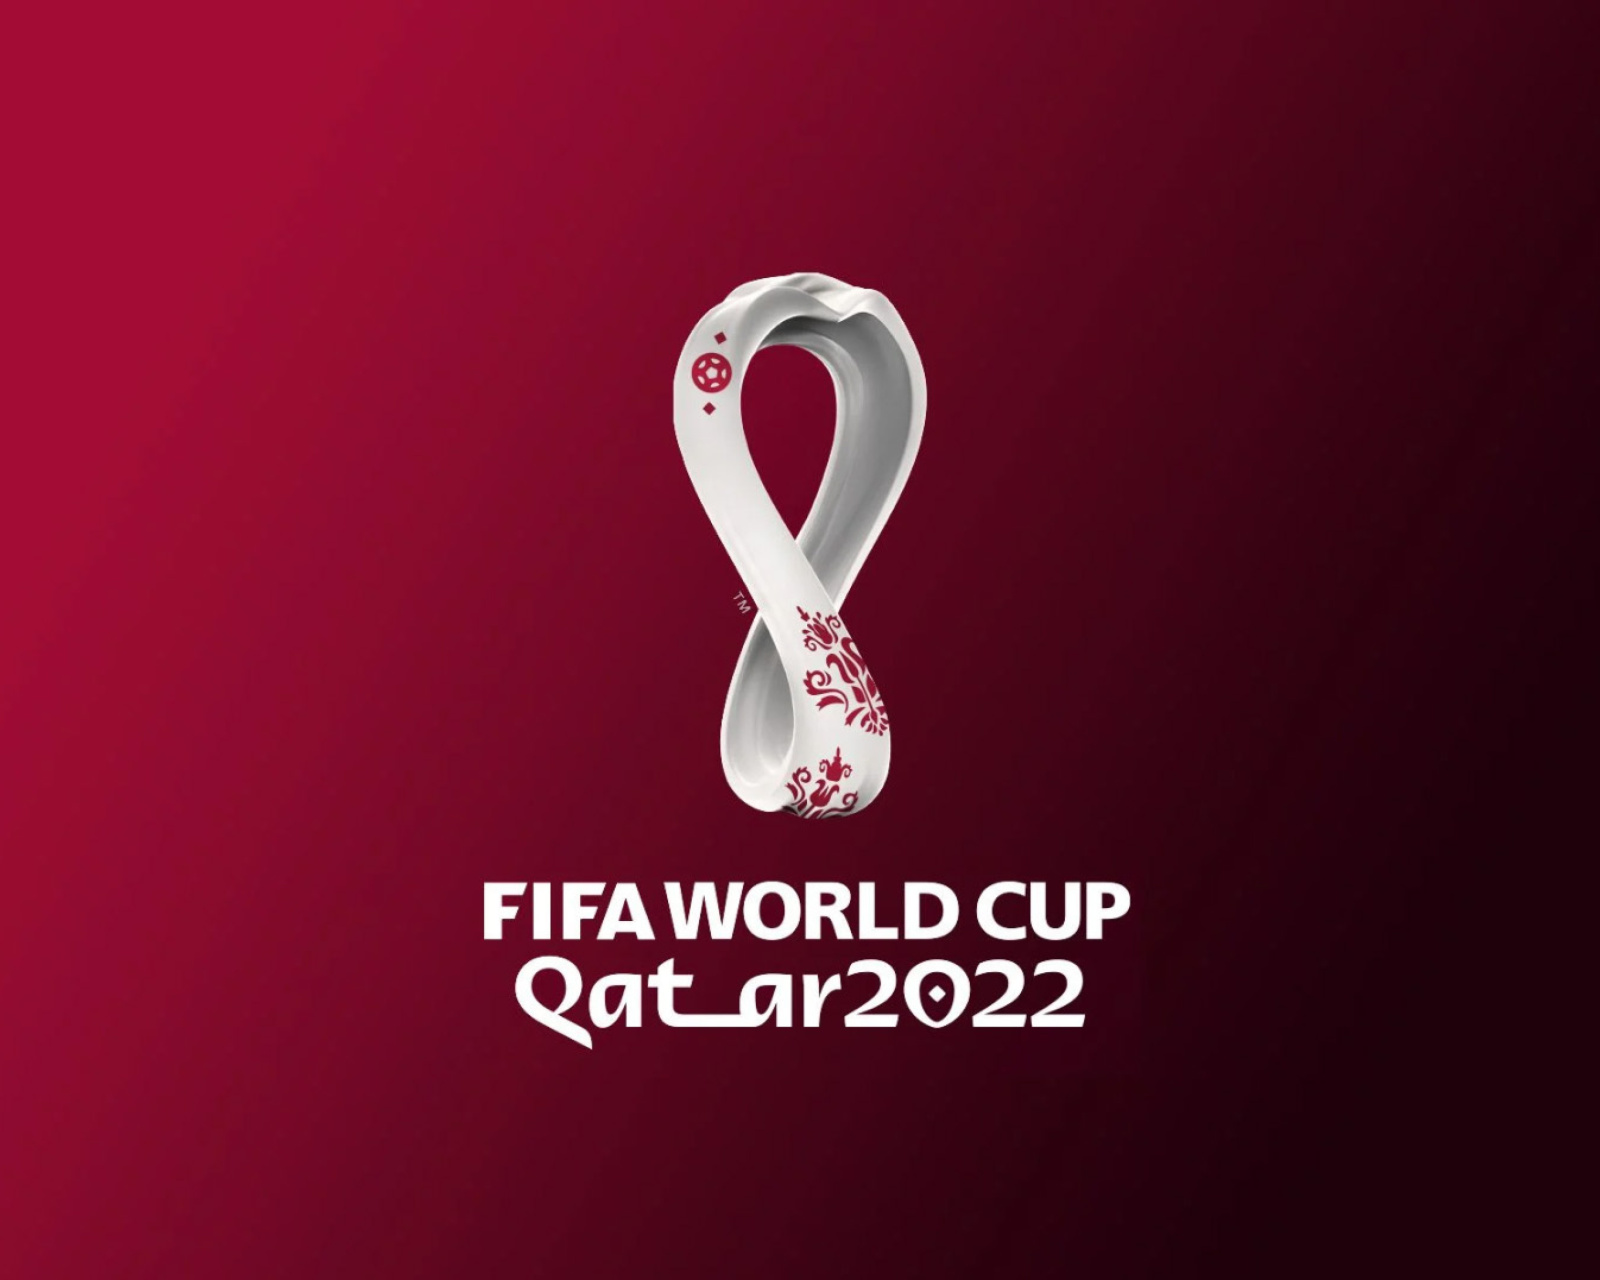 Обои World Cup Qatar 2022 1600x1280